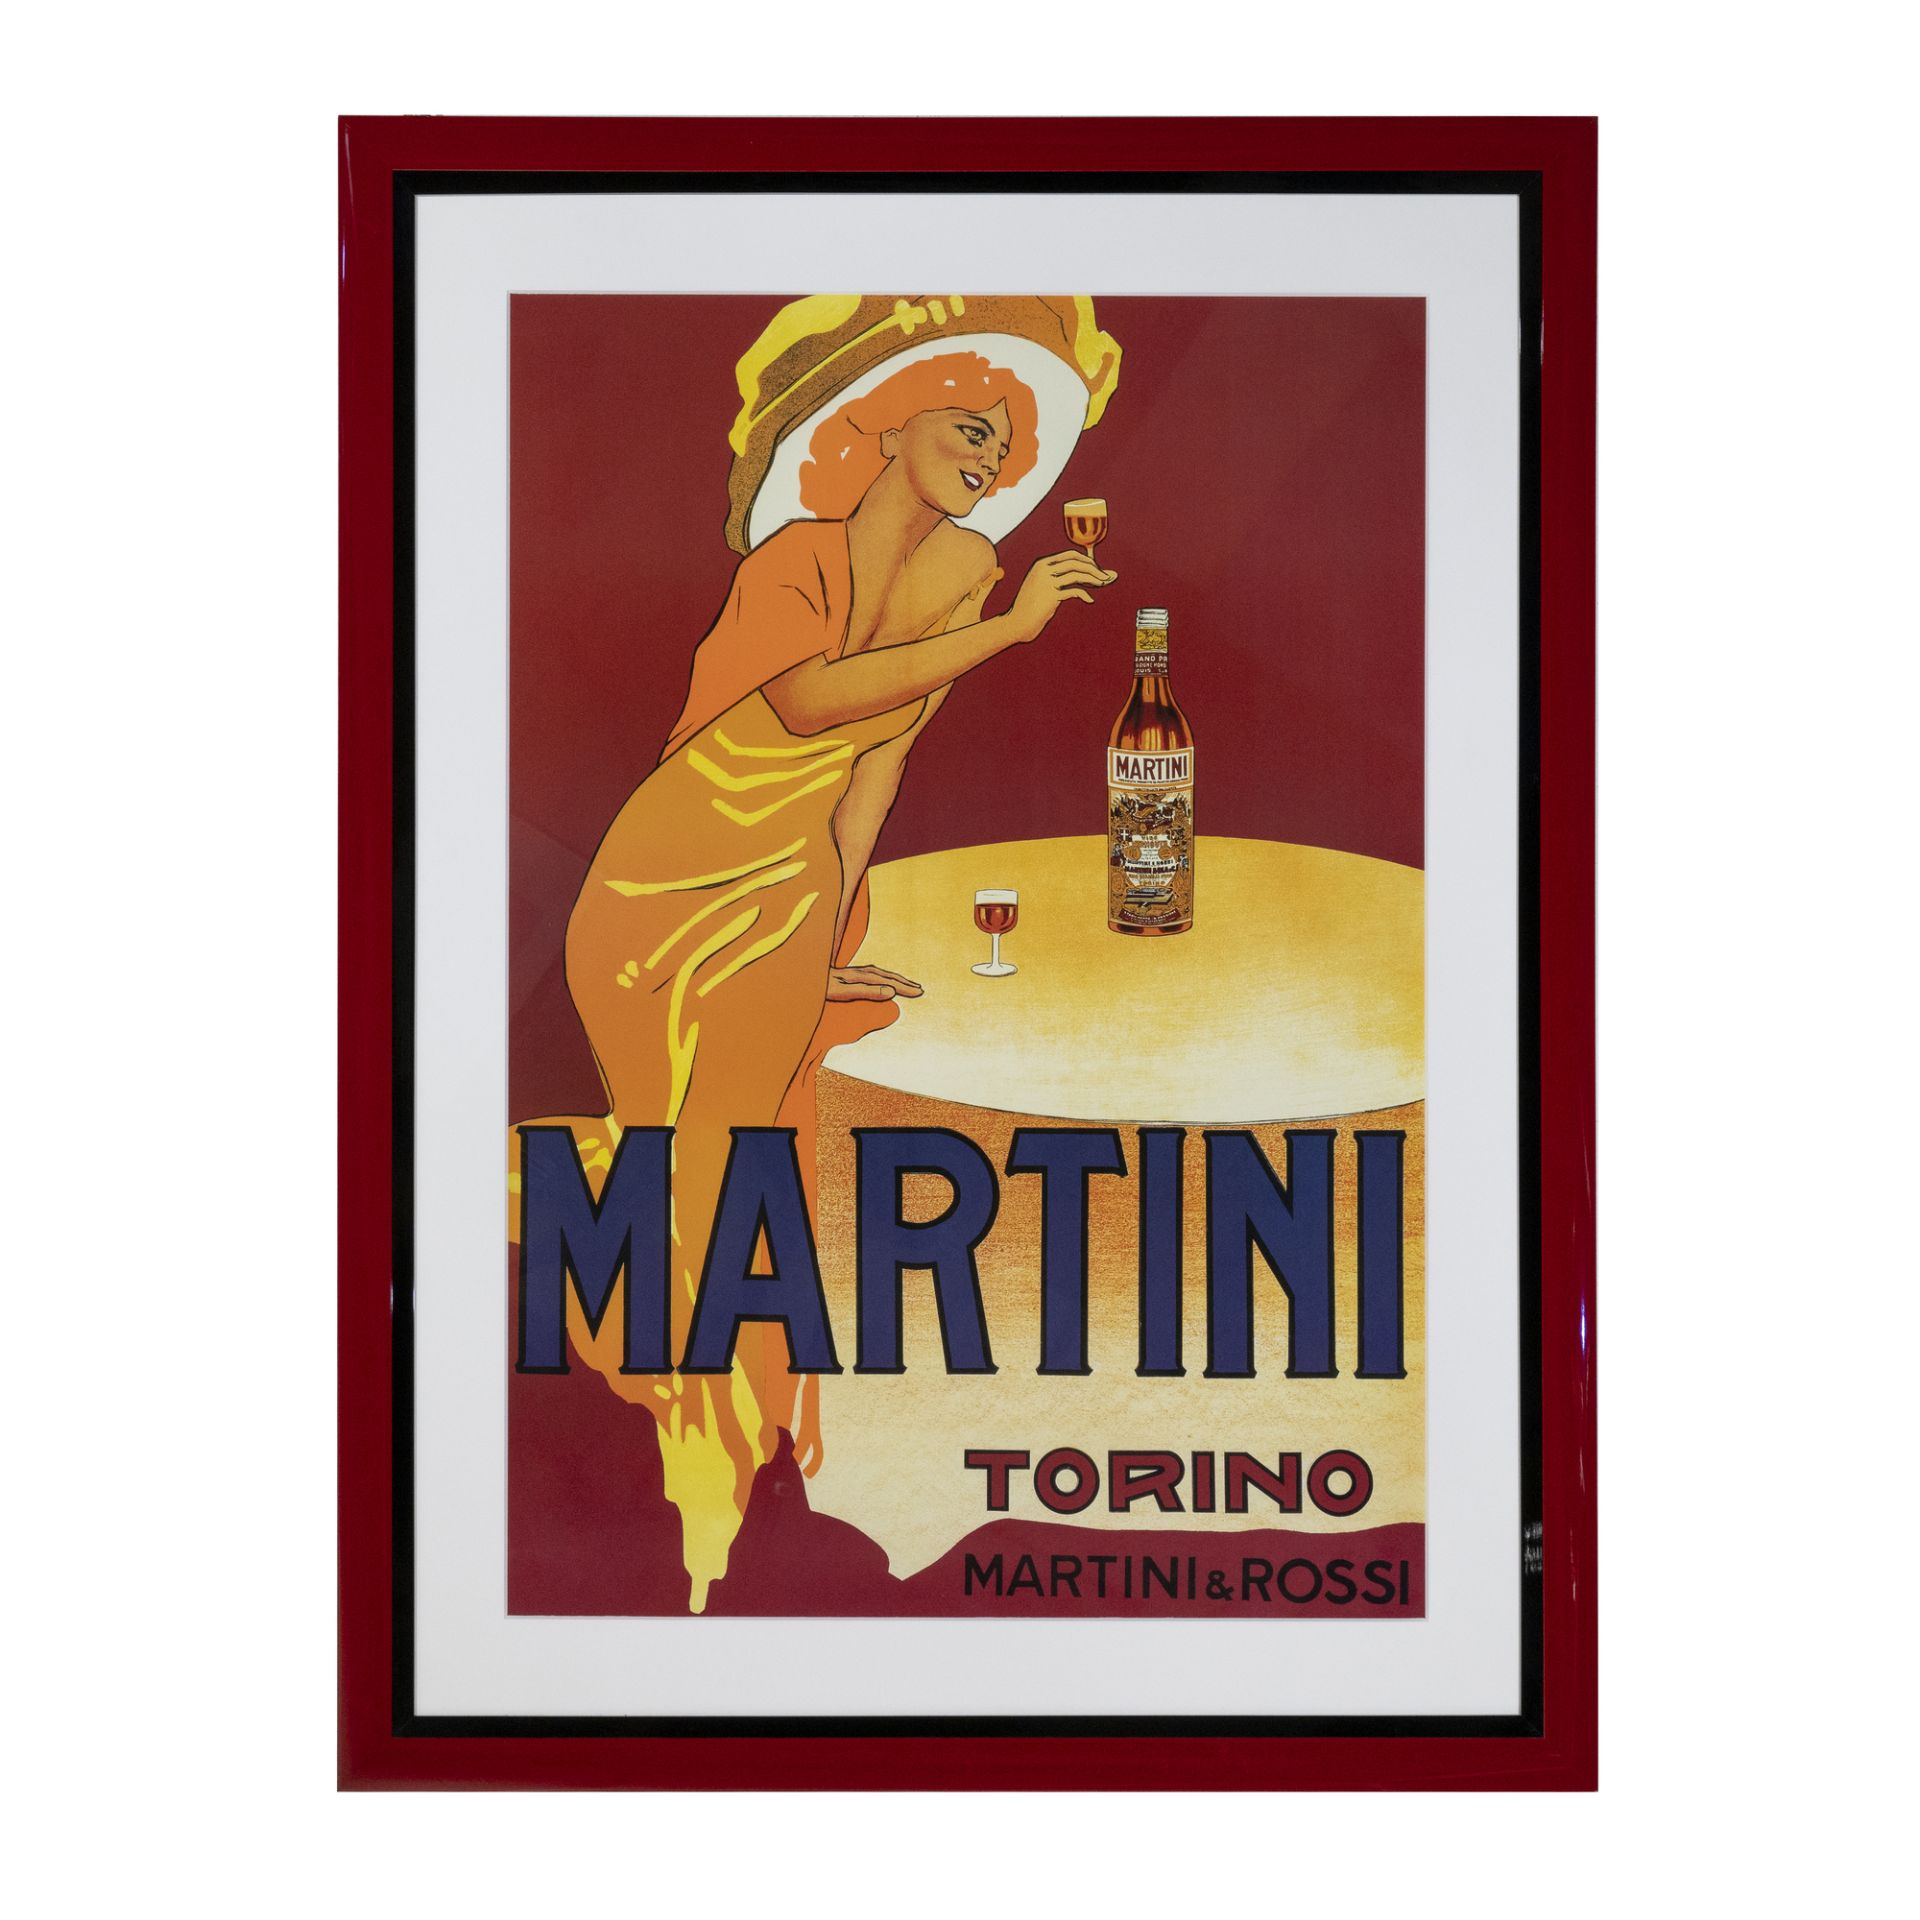 Manifesto MARTINI TORINO / MARTINI & ROSSI